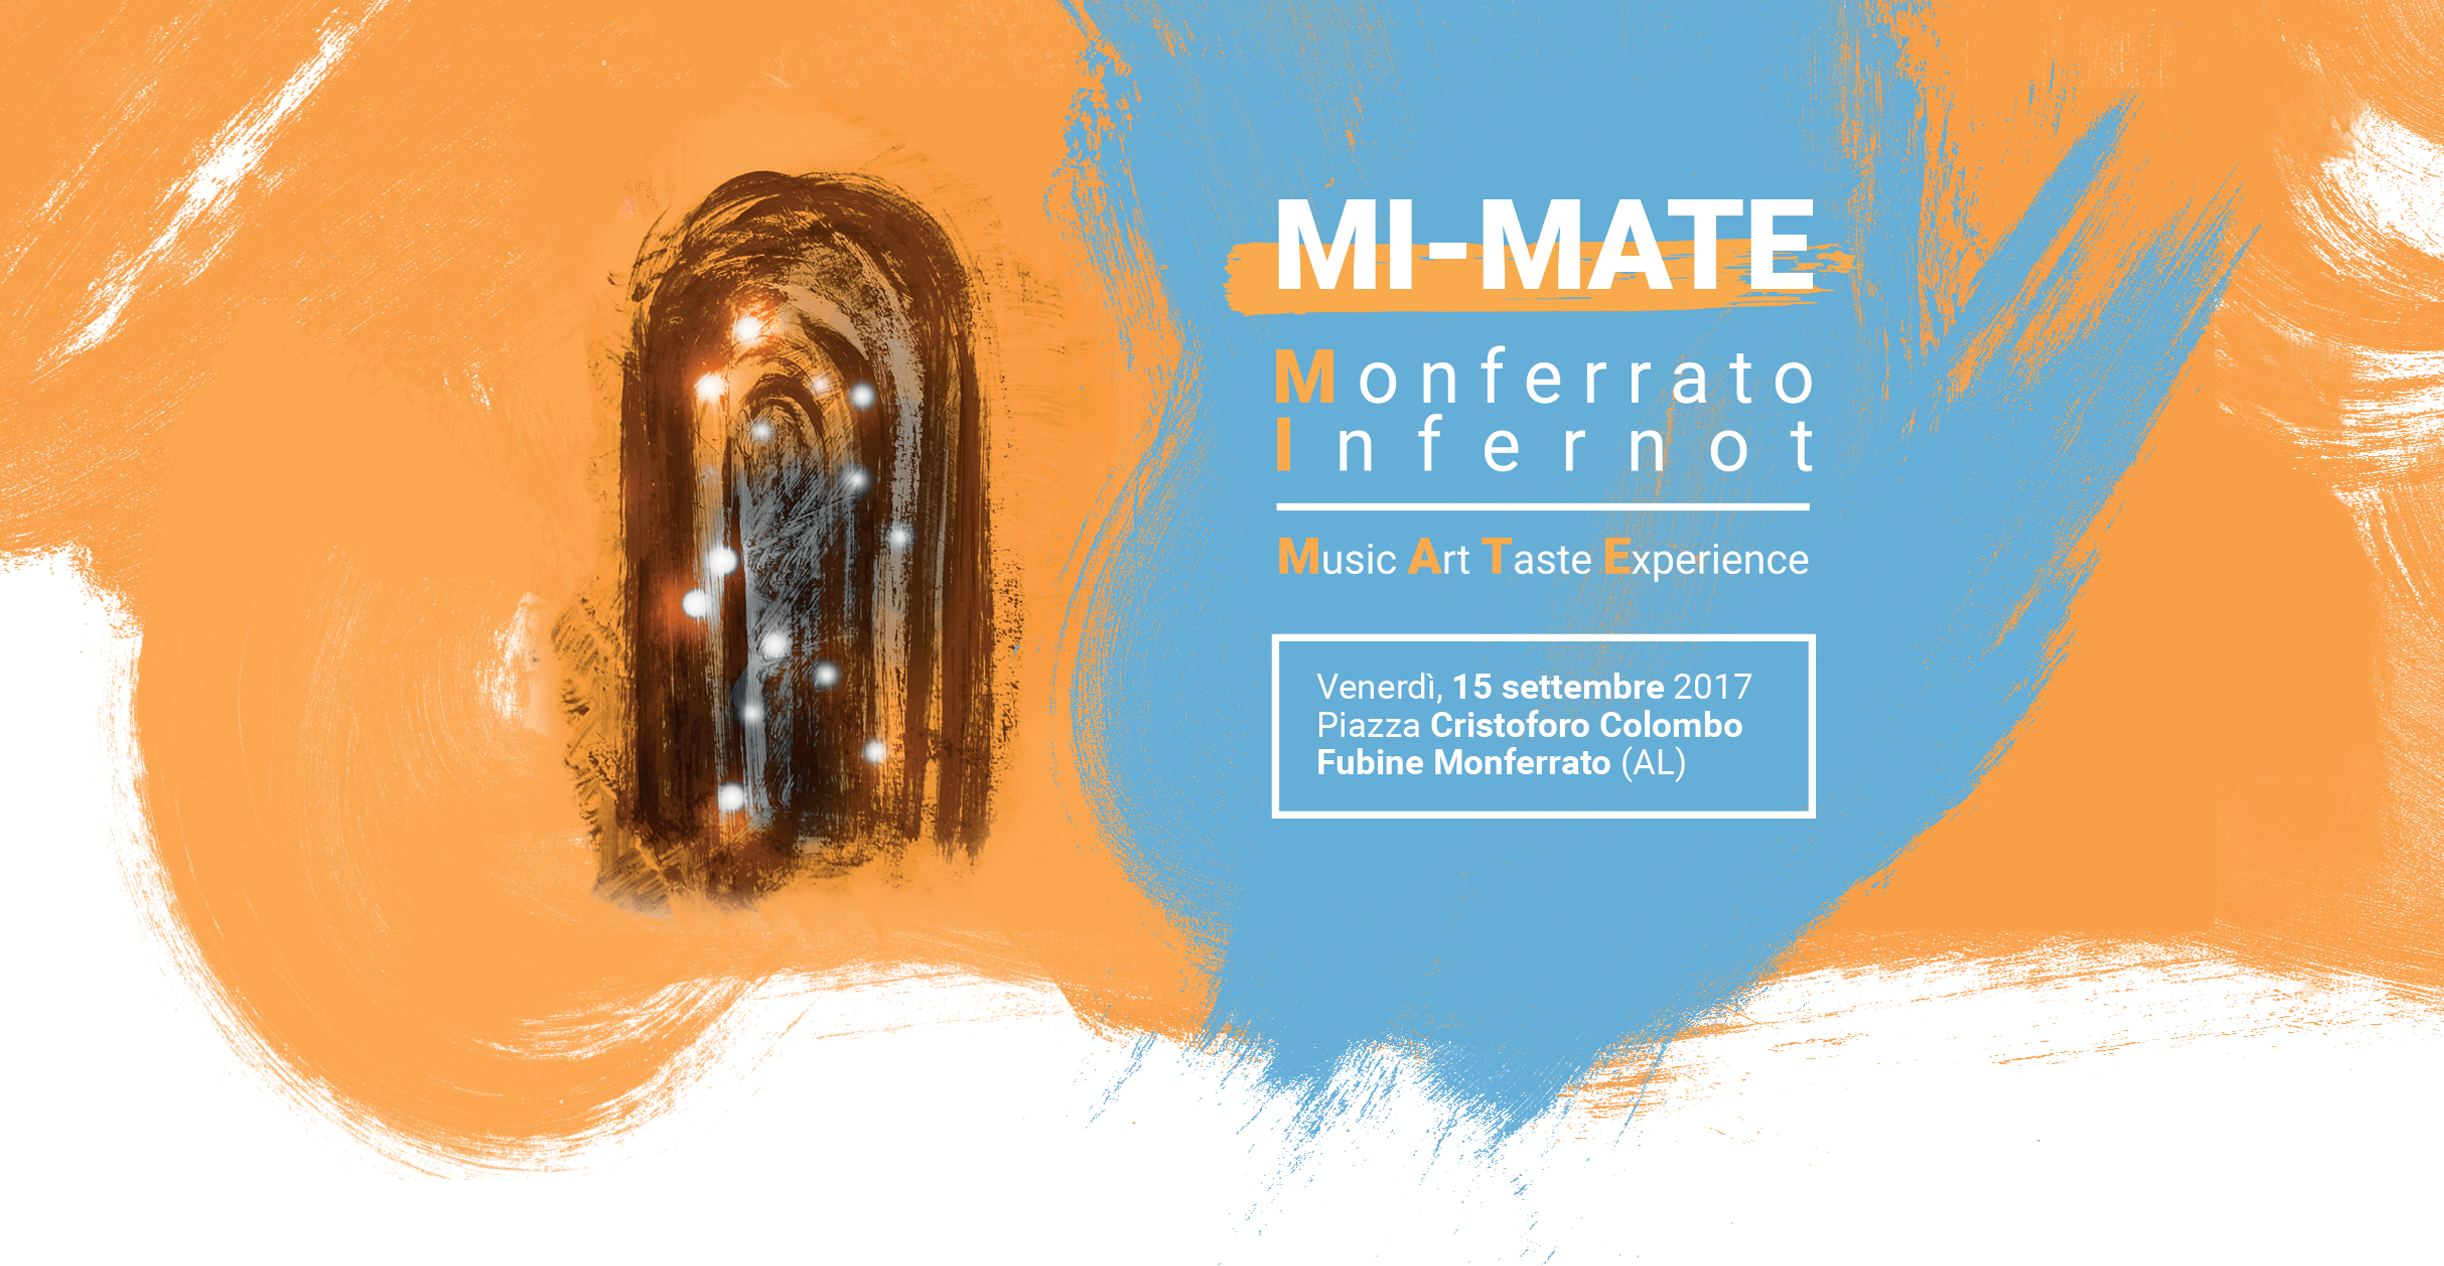 Monferrato infernot MATE: music, art, taste experience. Evento 2017 a Fubine Monferrato, Alessandria